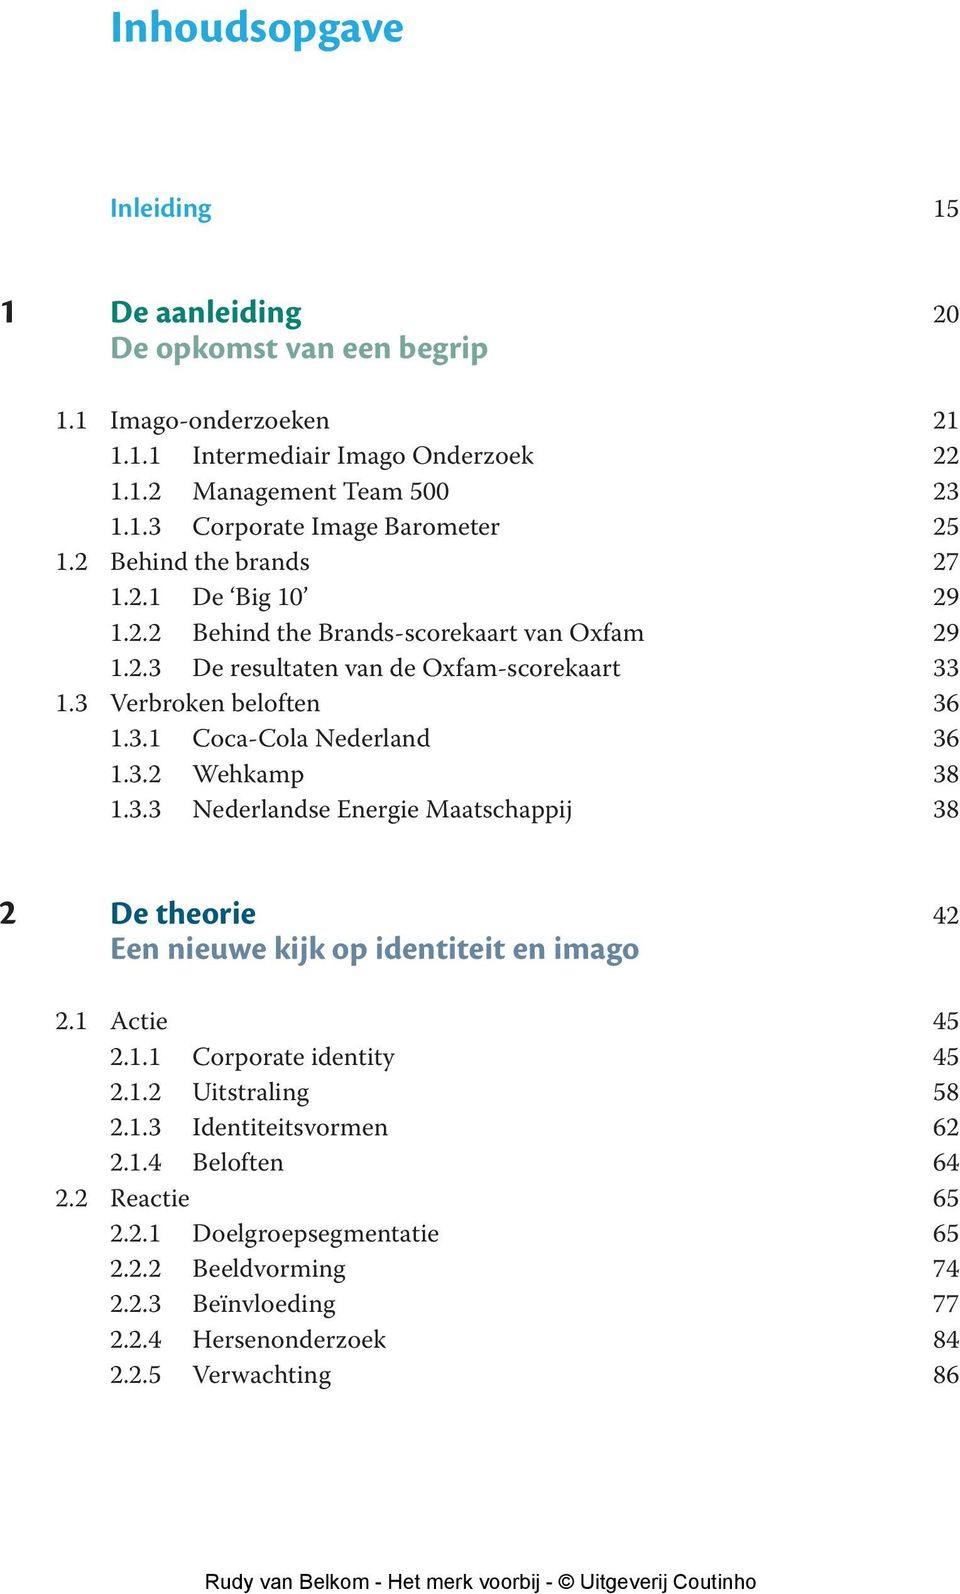 3.2 Wehkamp 38 1.3.3 Nederlandse Energie Maatschappij 38 2 De theorie 42 Een nieuwe kijk op identiteit en imago 2.1 Actie 45 2.1.1 Corporate identity 45 2.1.2 Uitstraling 58 2.1.3 Identiteitsvormen 62 2.